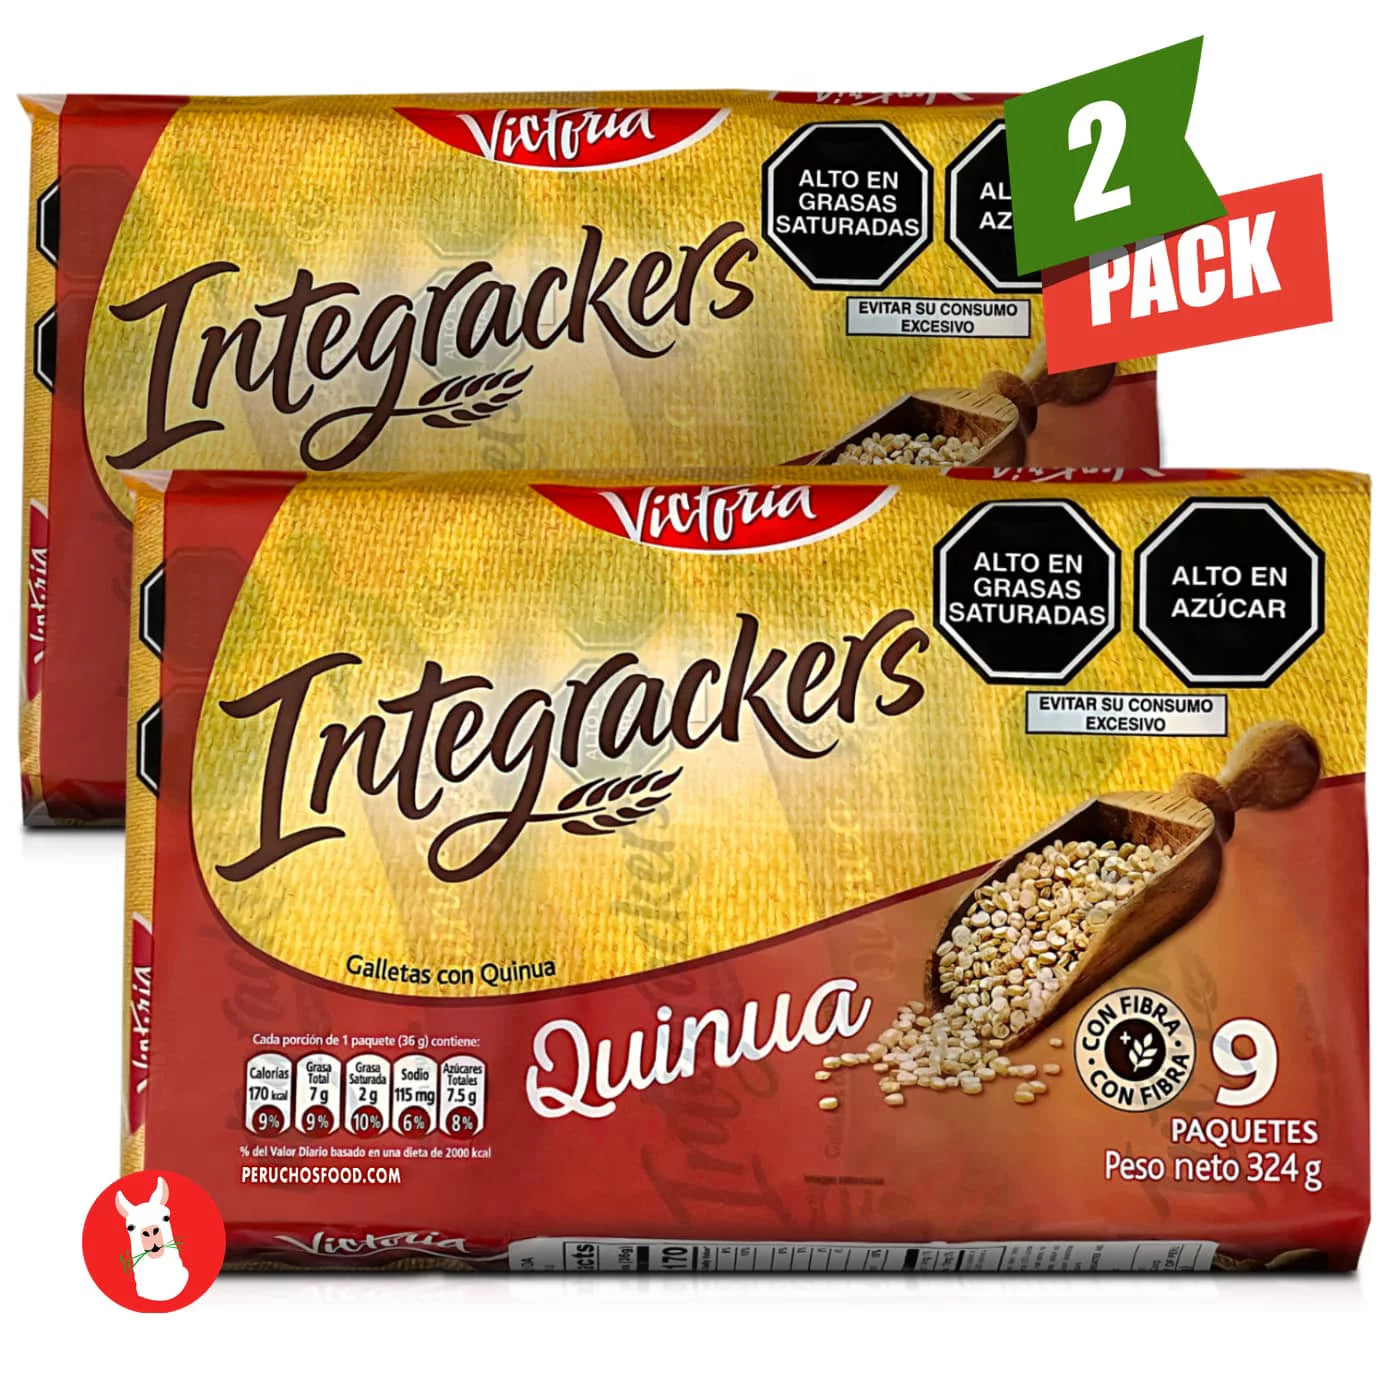 Victoria Integrackers Galletas Quinua 9 Units | Peruvian Quinoa Cookies